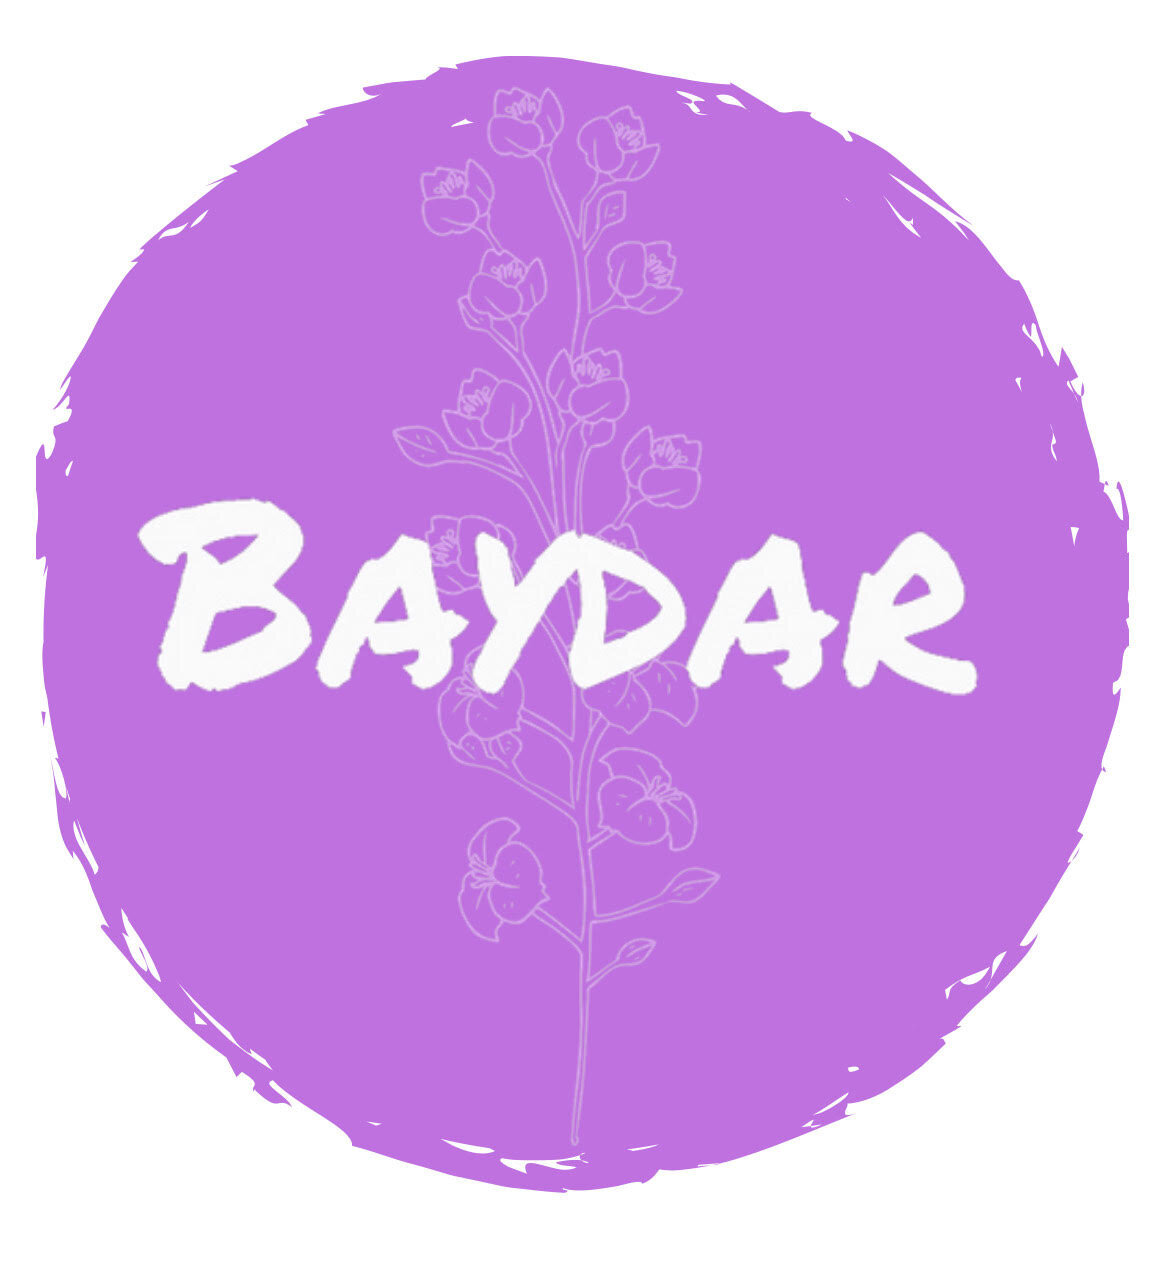 Baydar / ဗေဒါ